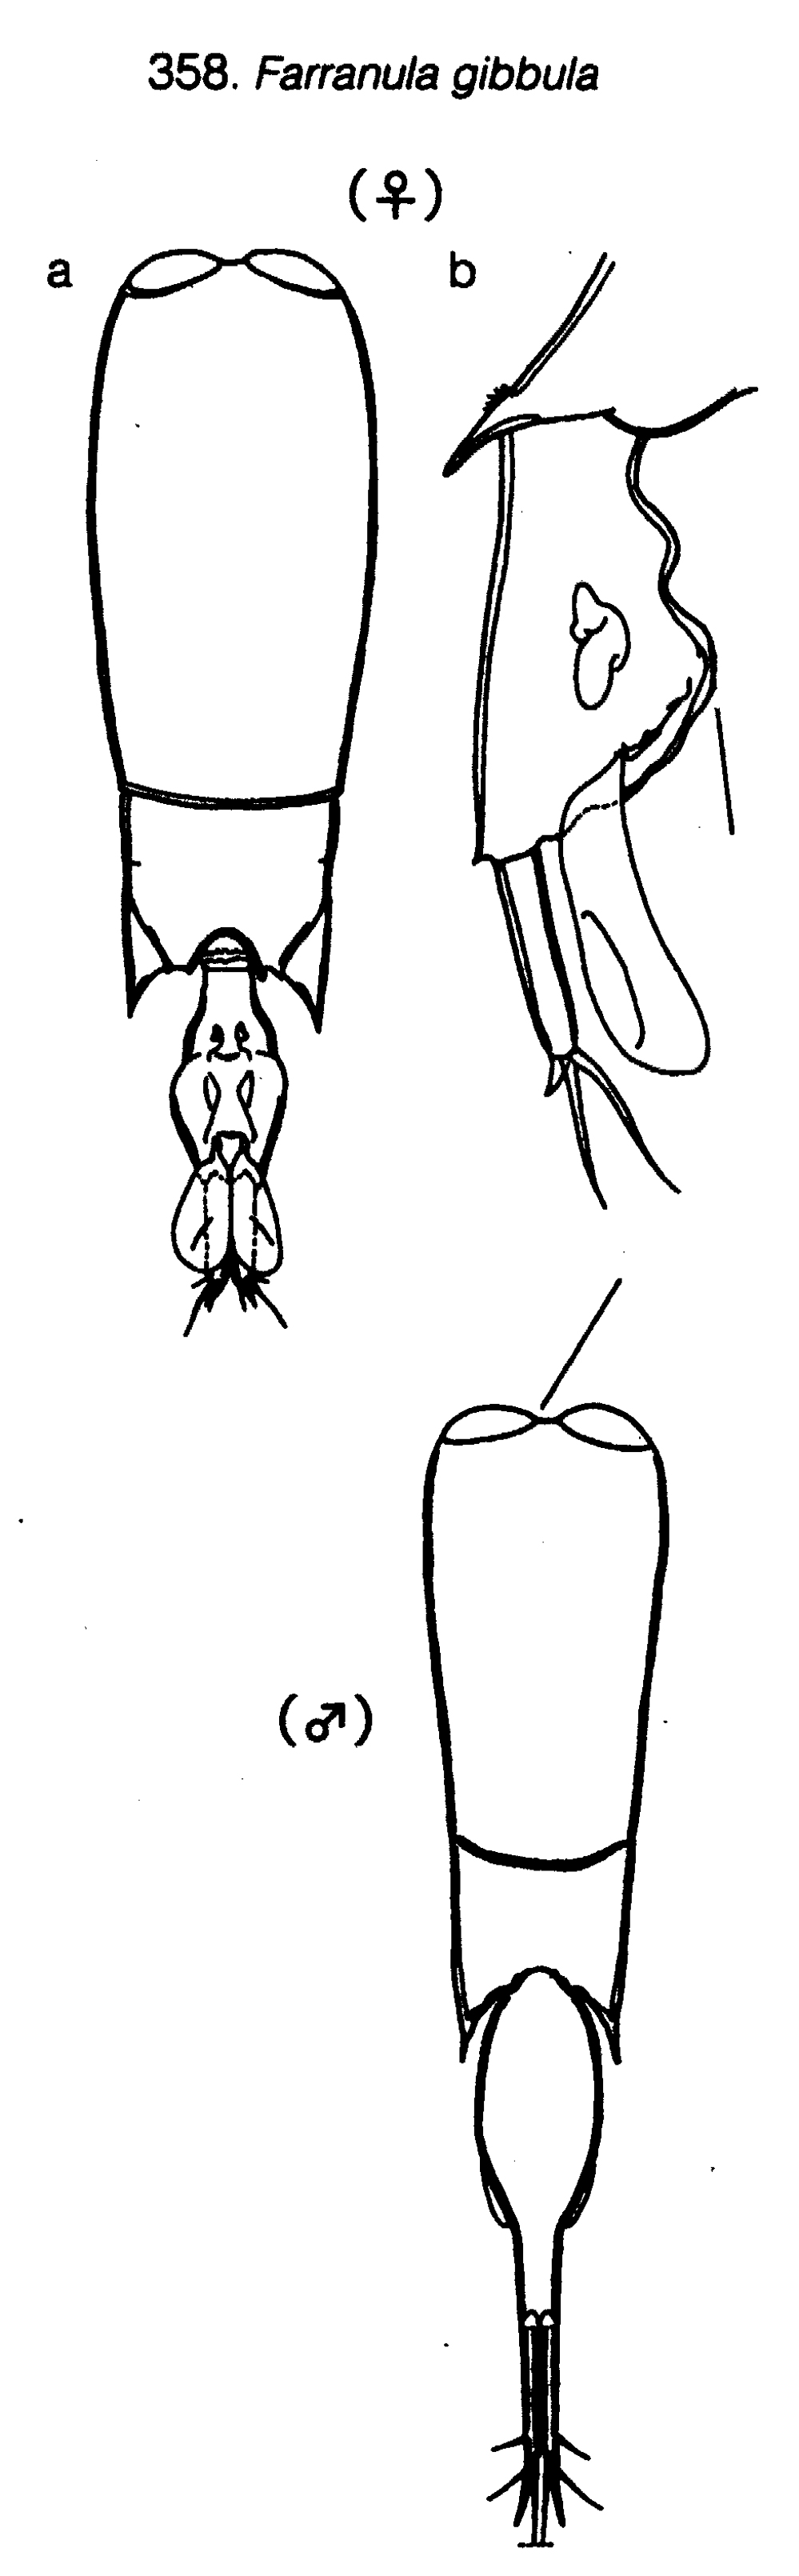 Espèce Farranula gibbula - Planche 24 de figures morphologiques